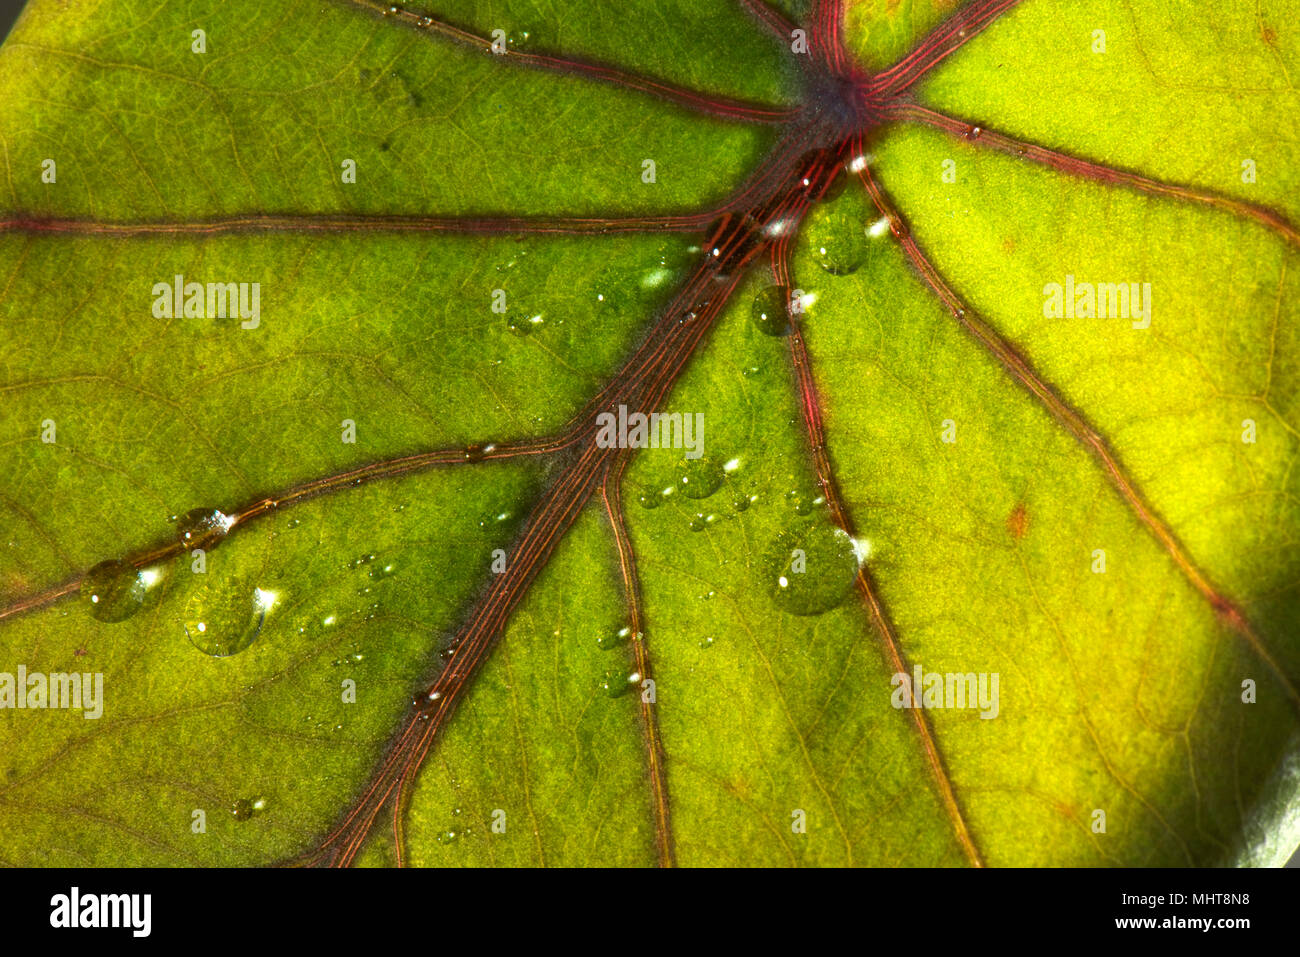 Le goccioline di acqua sulla seduta e respinti dalla superficie cerosa di una foglia di taro, Colocasia esculenta Foto Stock